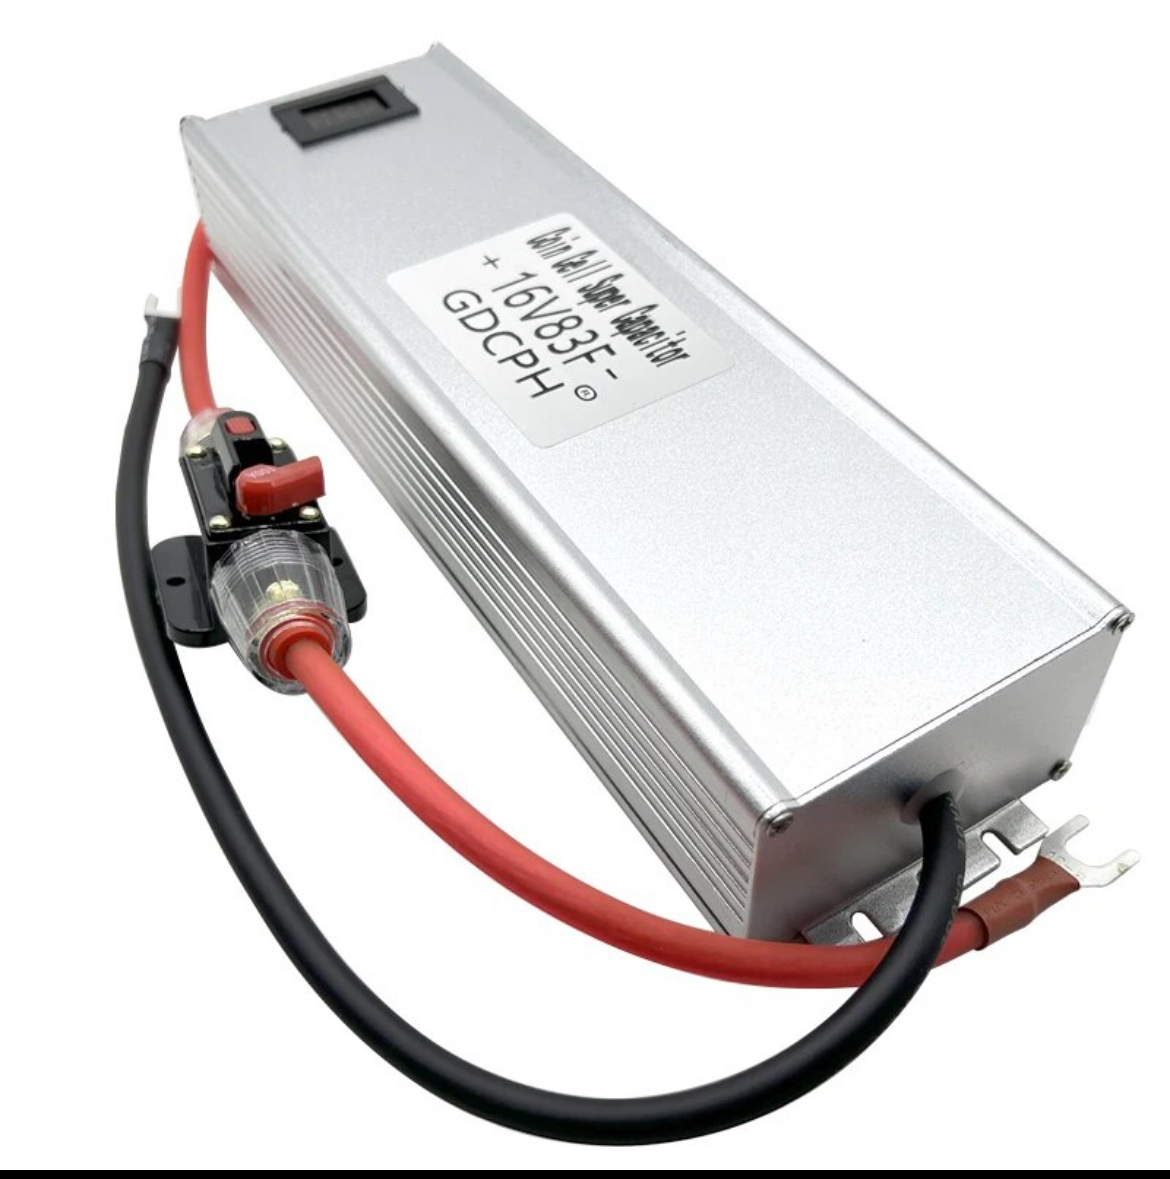  点検済み 国内在庫発送 点検商品　EDLC 充電発送 直ぐ使えます スーパーカーボンキャパシター GDCPH 16V 83FのEDLCです。電圧計付きです。_画像3